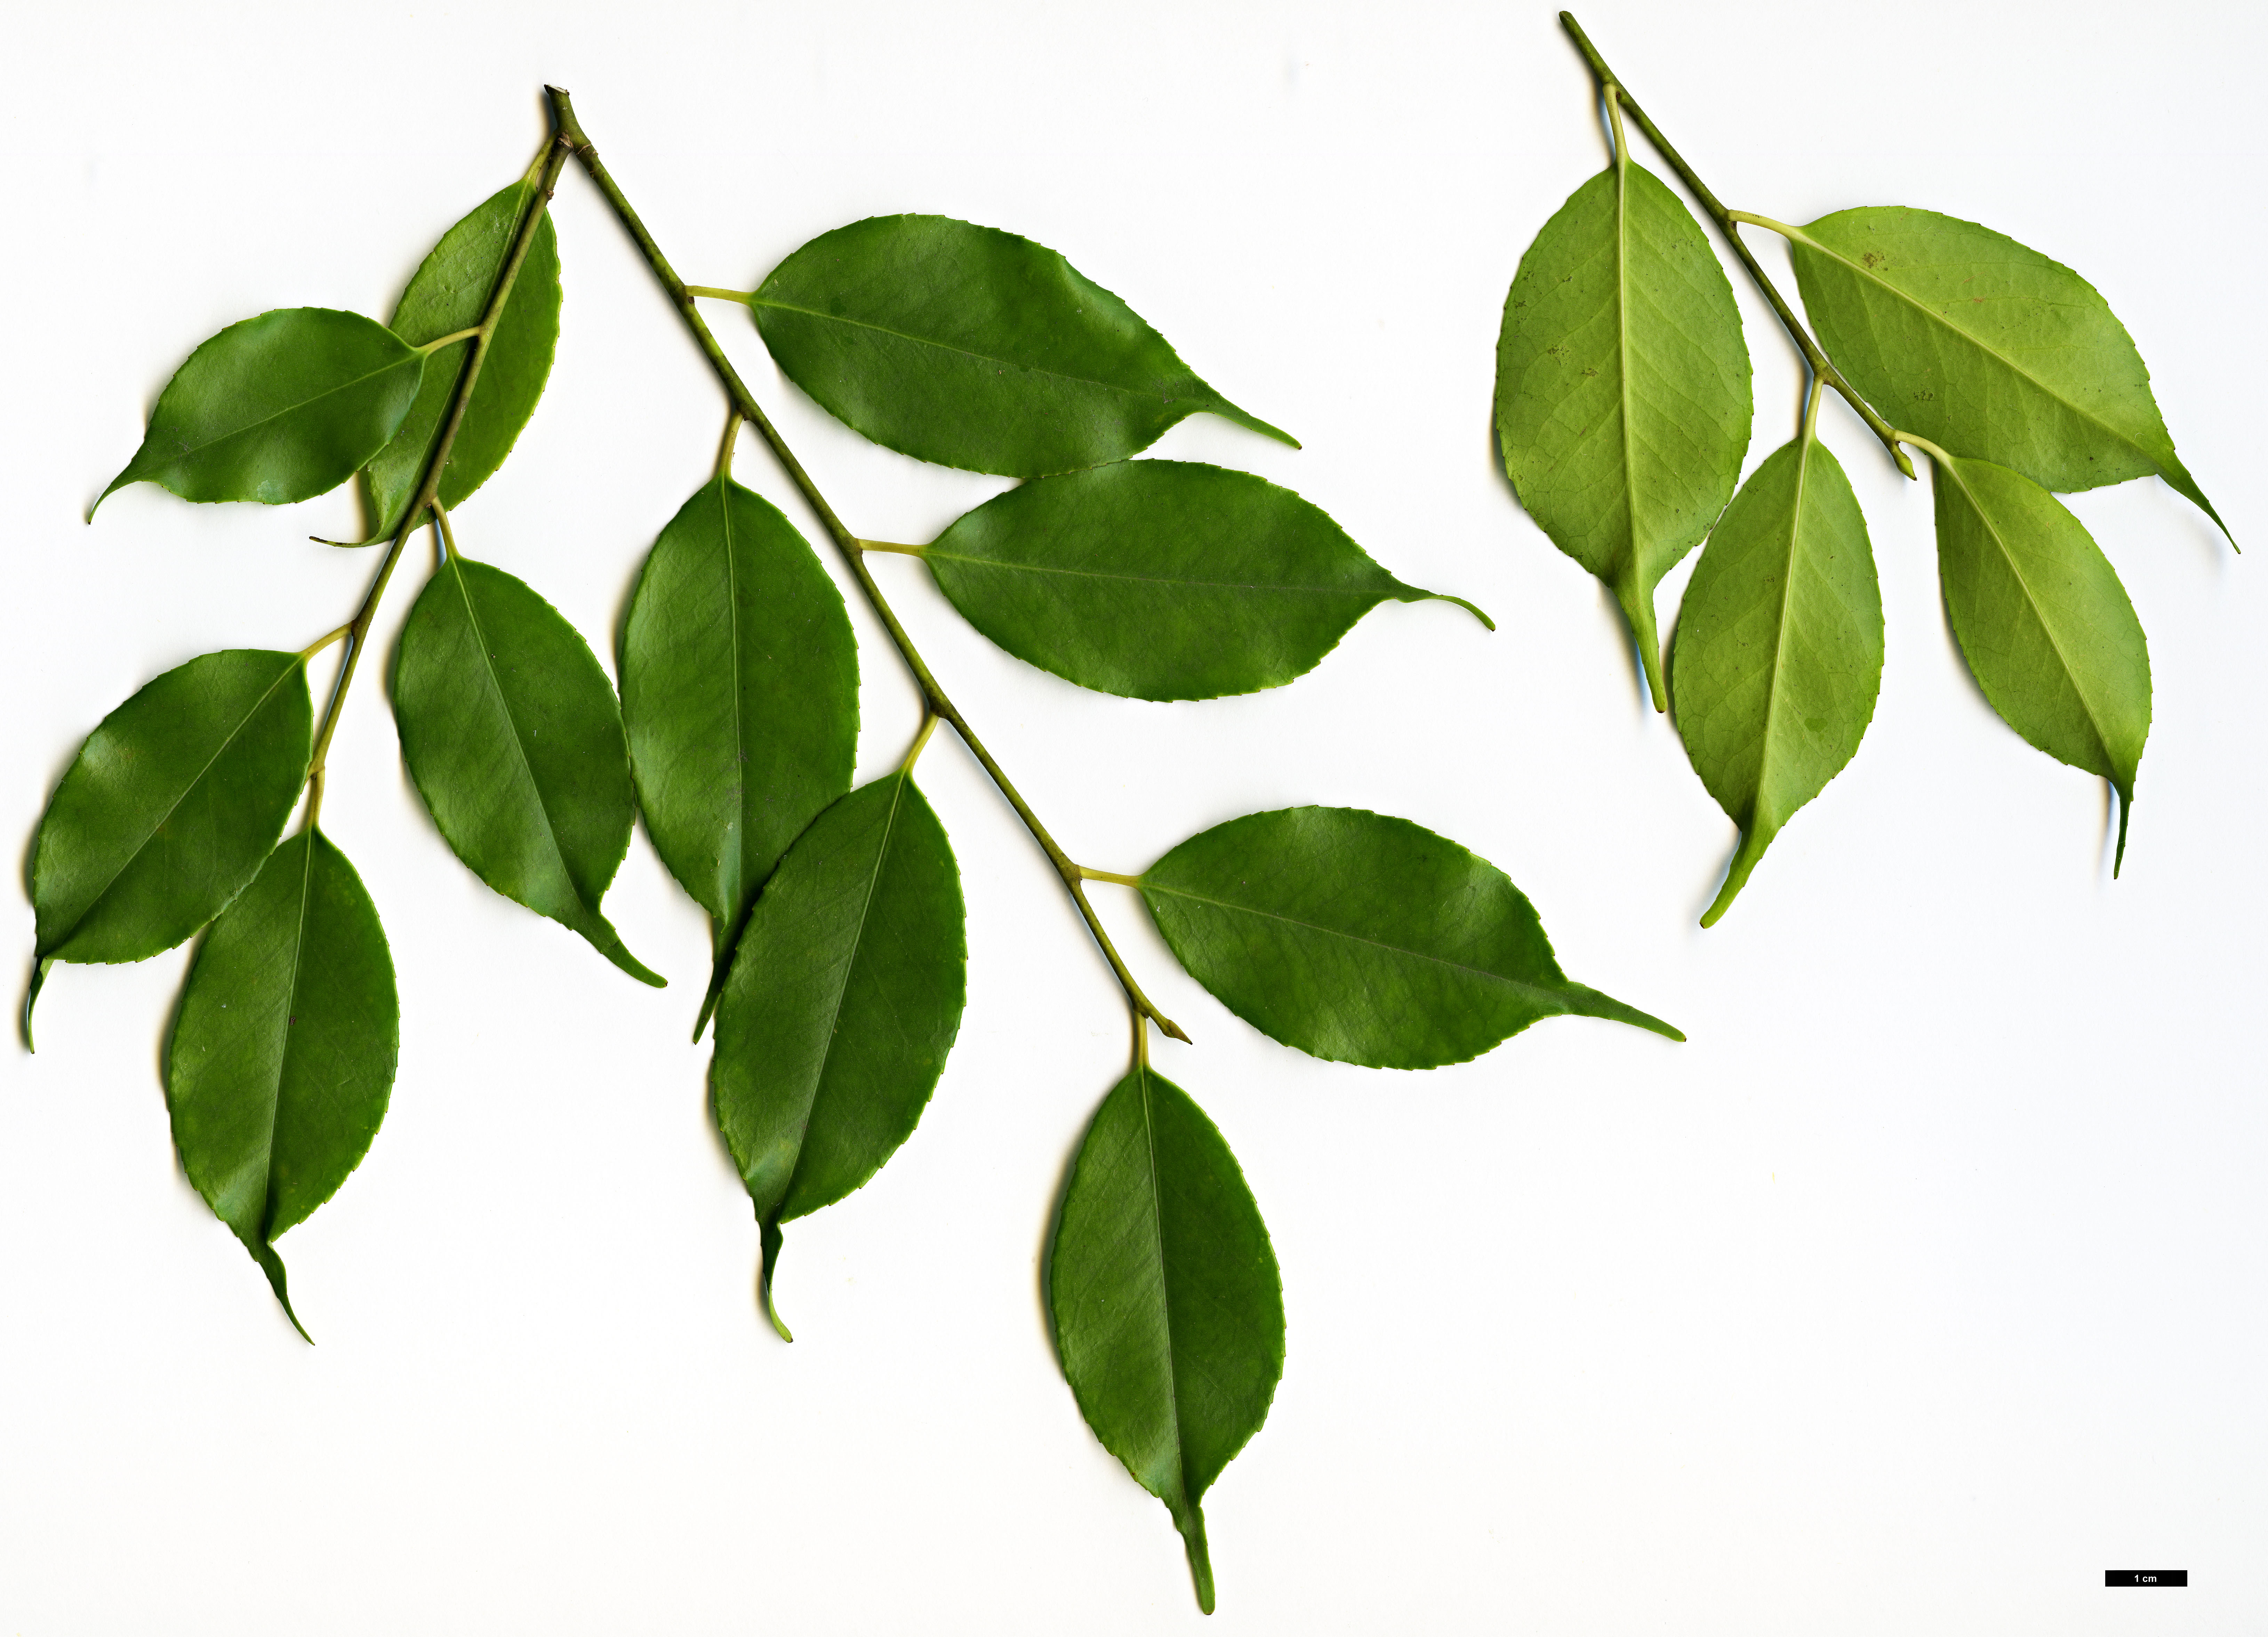 High resolution image: Family: Aquifoliaceae - Genus: Ilex - Taxon: brachyphylla